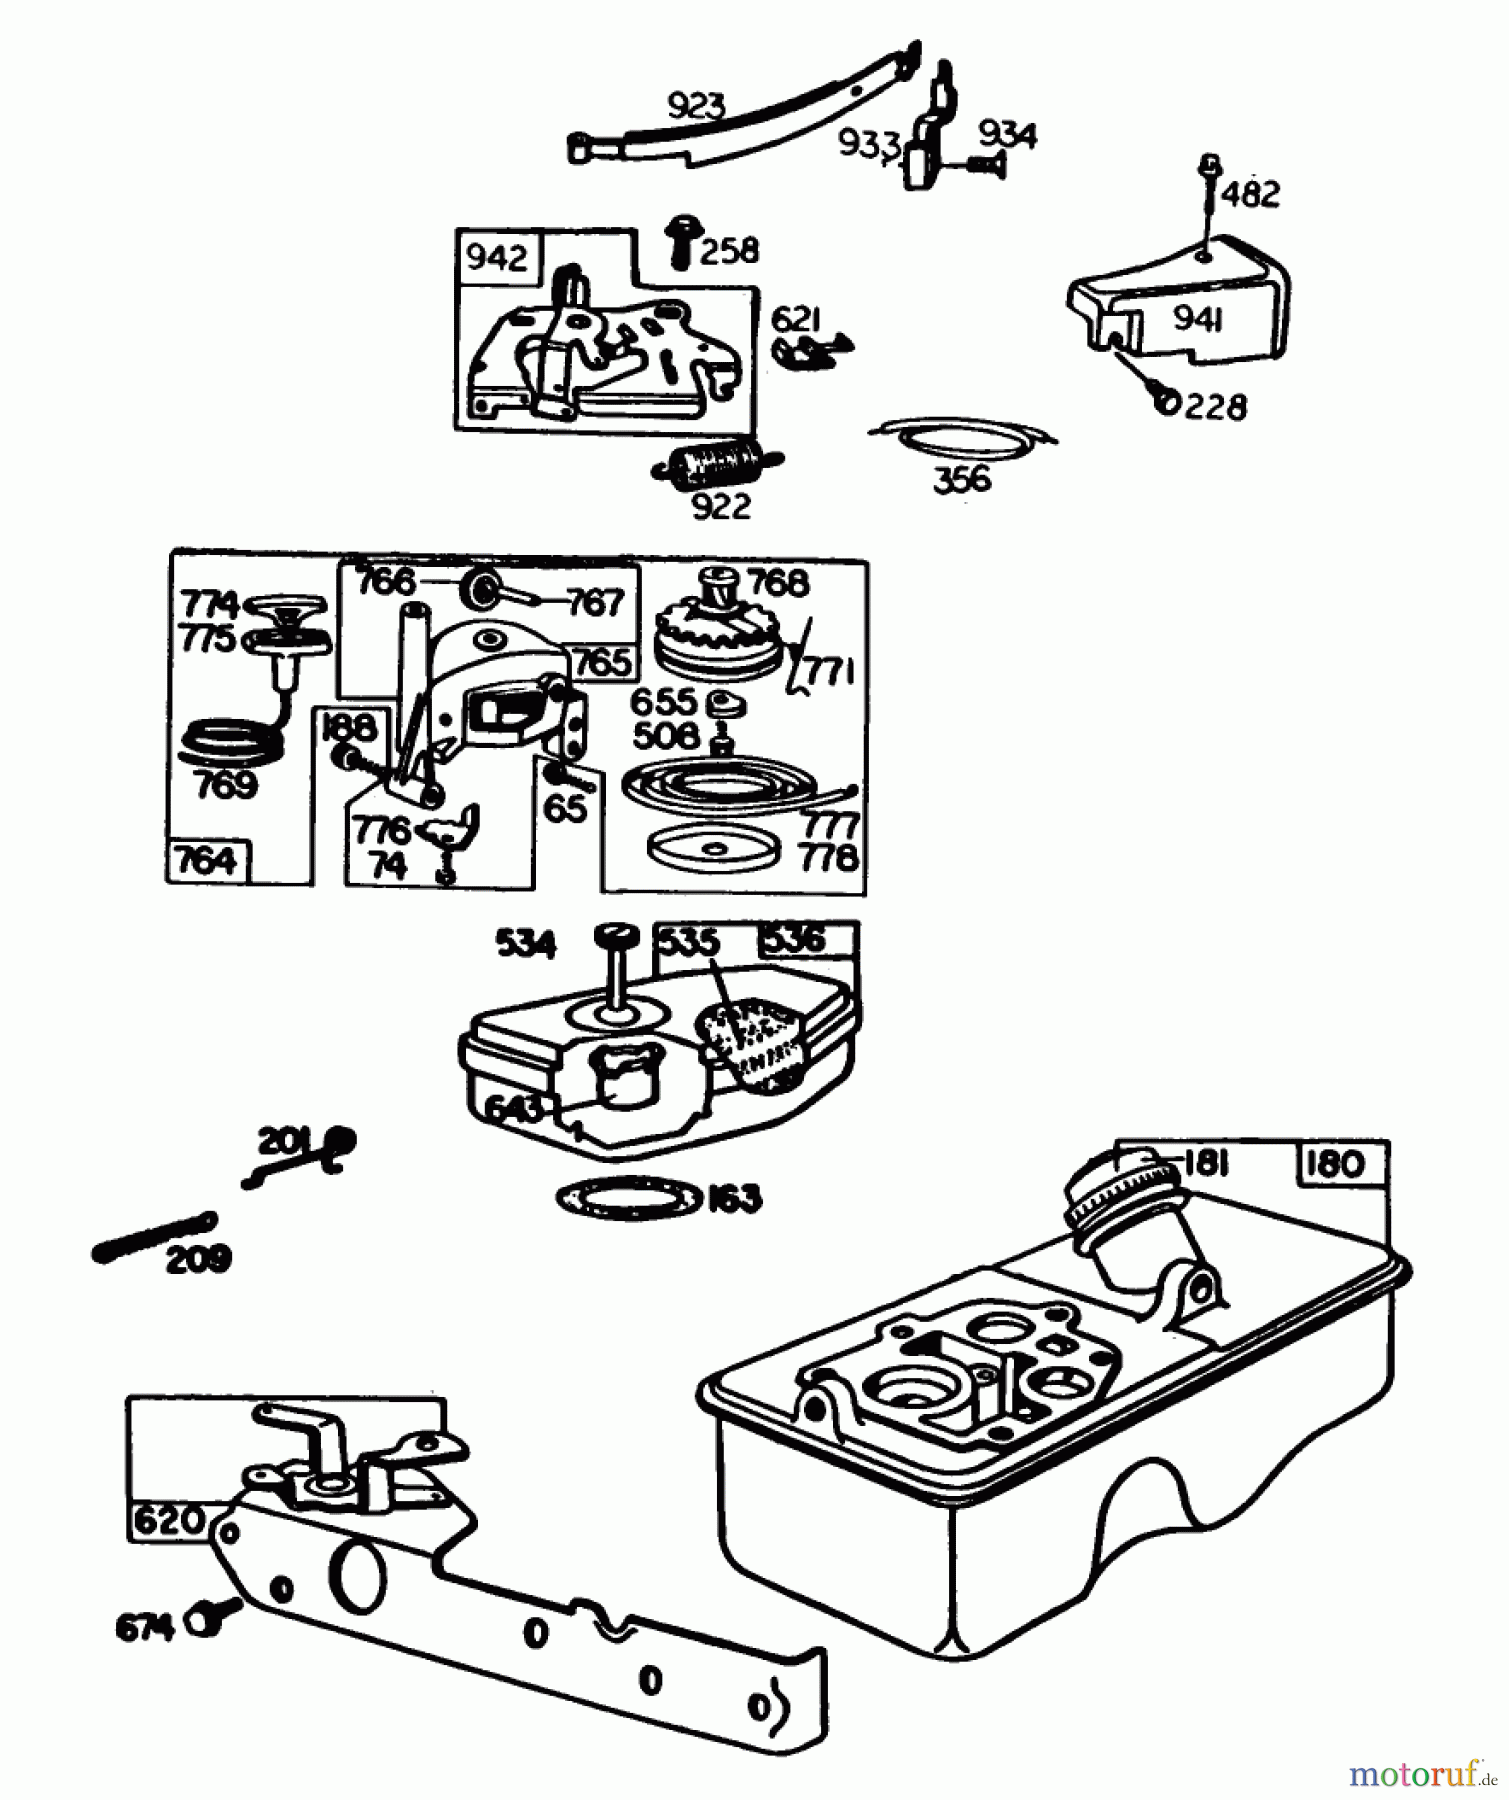  Toro Neu Mowers, Walk-Behind Seite 1 20560 - Toro Lawnmower, 1983 (3000001-3999999) ENGINE BRIGGS & STRATTON MODEL NO. 92908-3196-01 #3